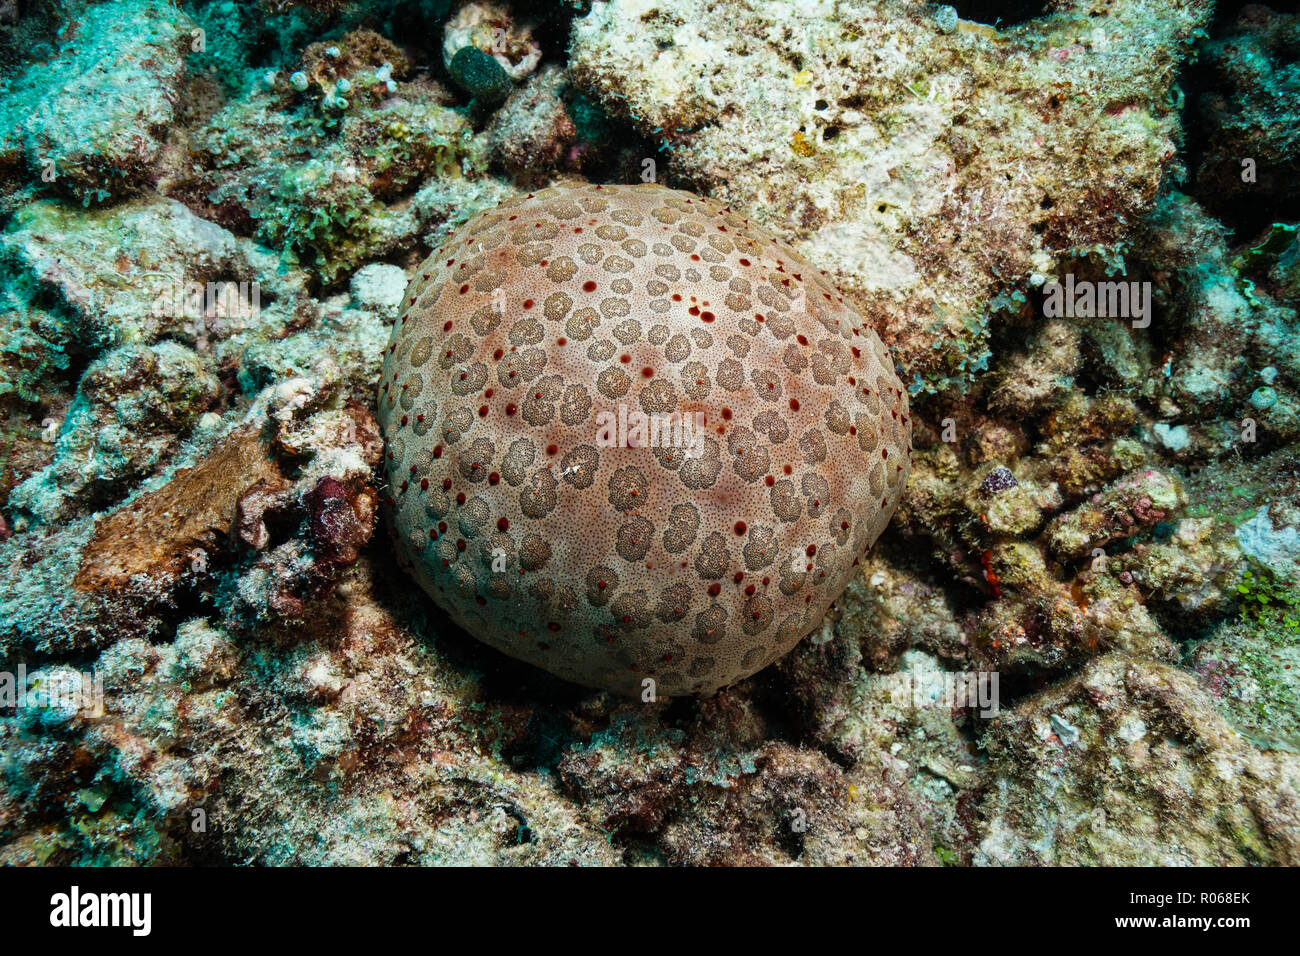 Starfish at the Maldives Stock Photo